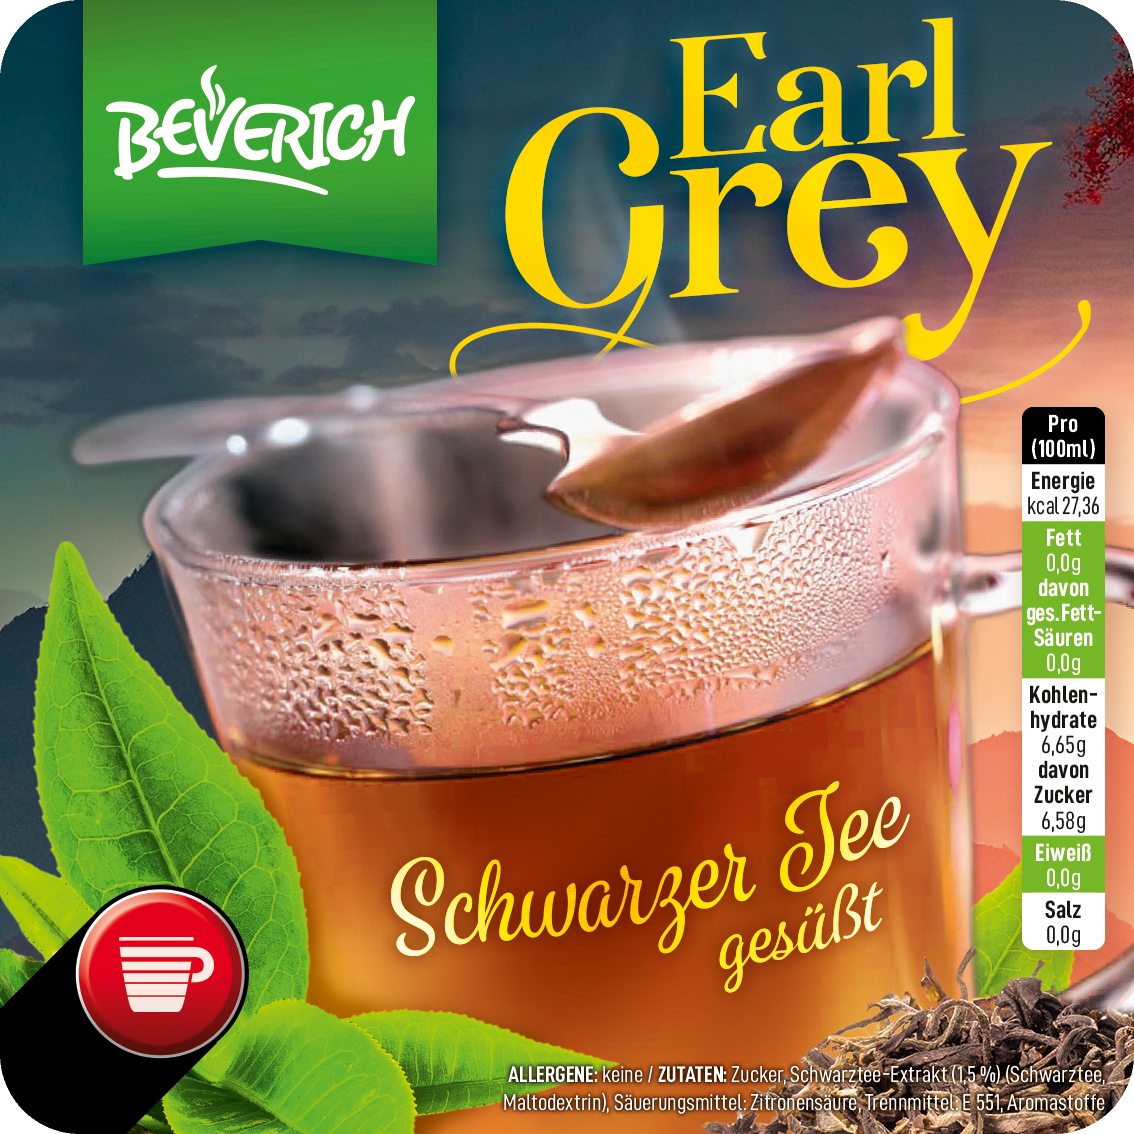 BEVERICH - Earl Grey - Schwarzer Tee